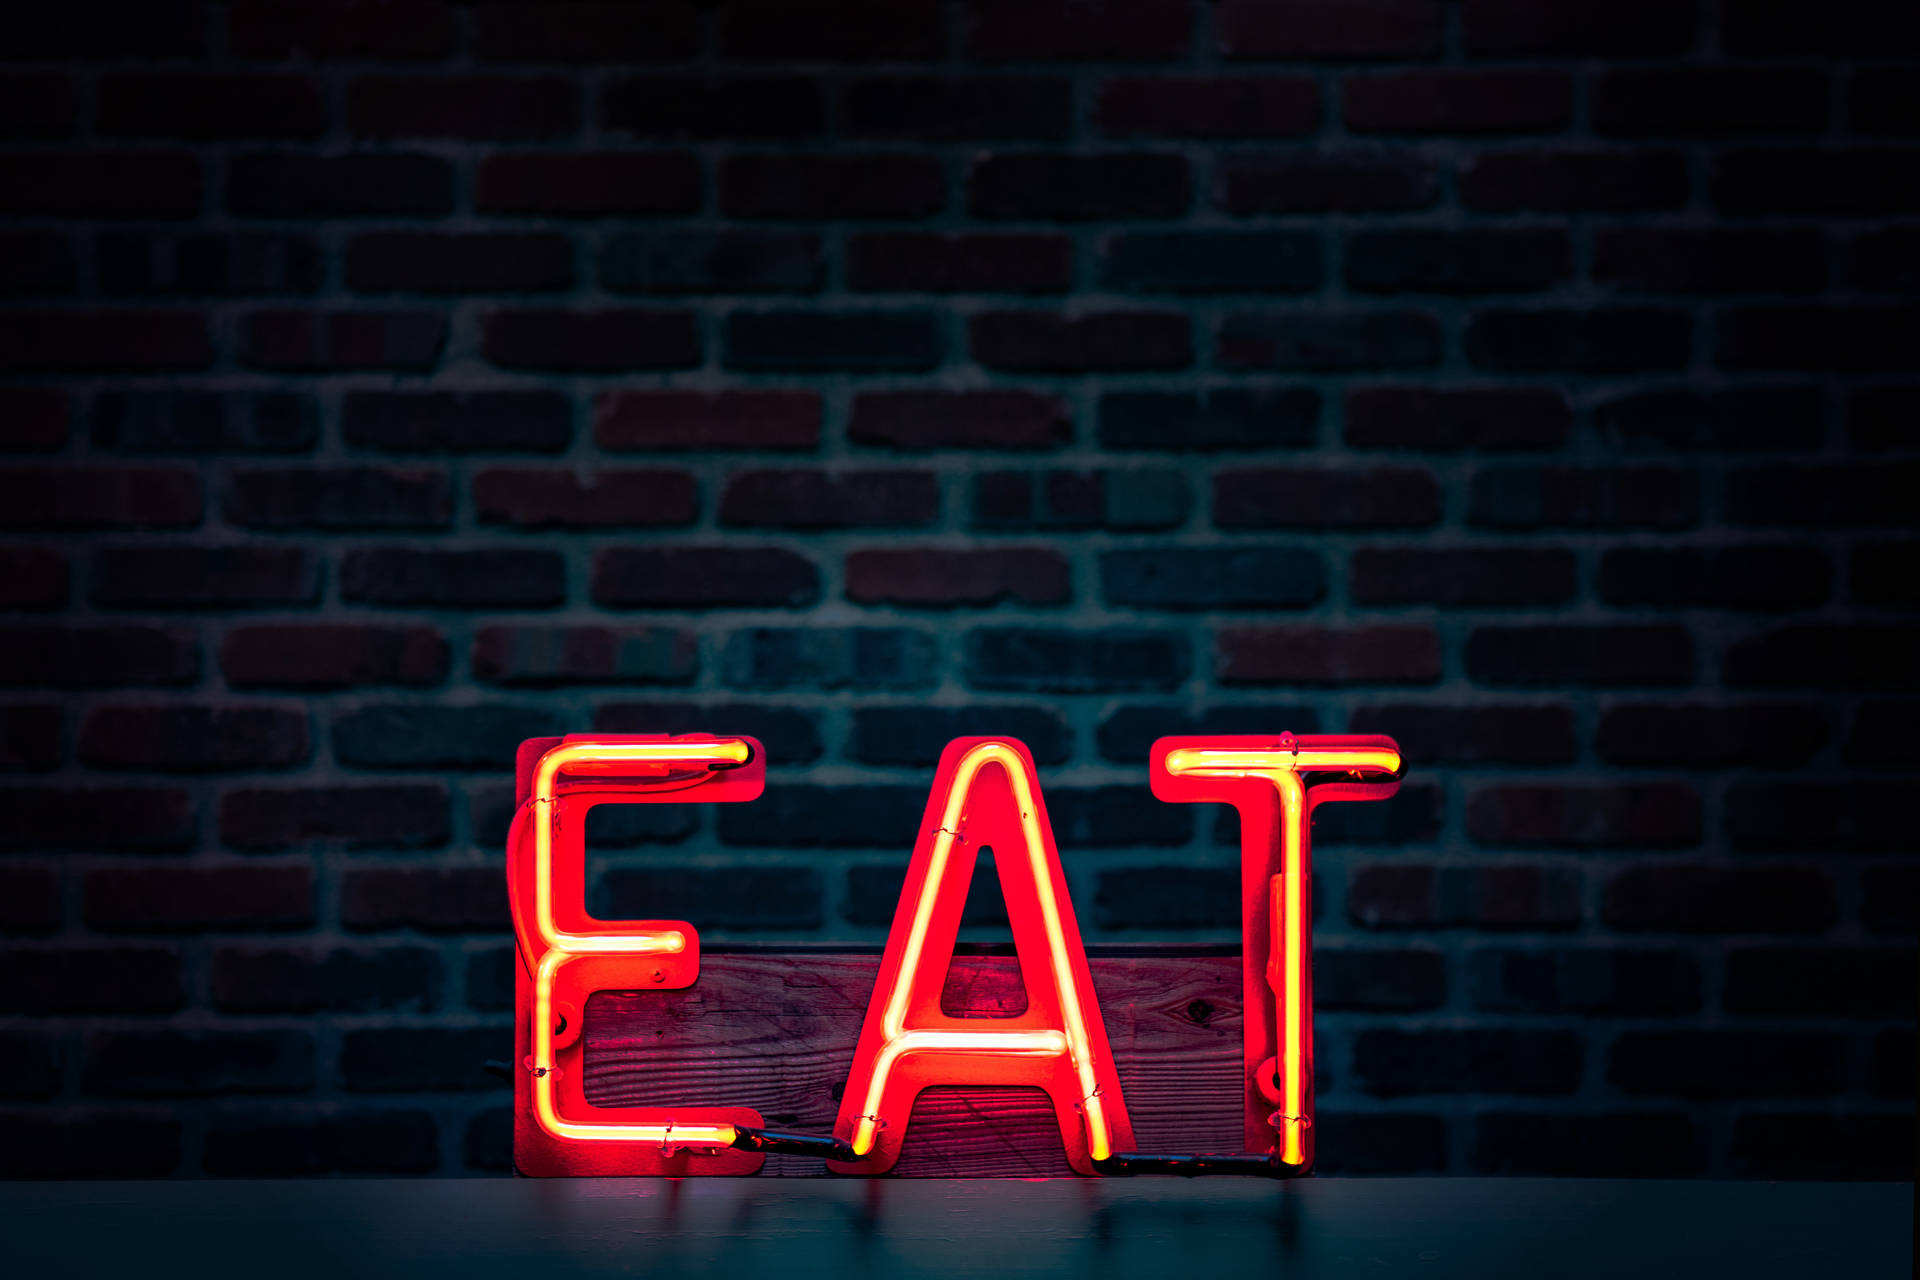 Eat Neon Sign Wallpaper